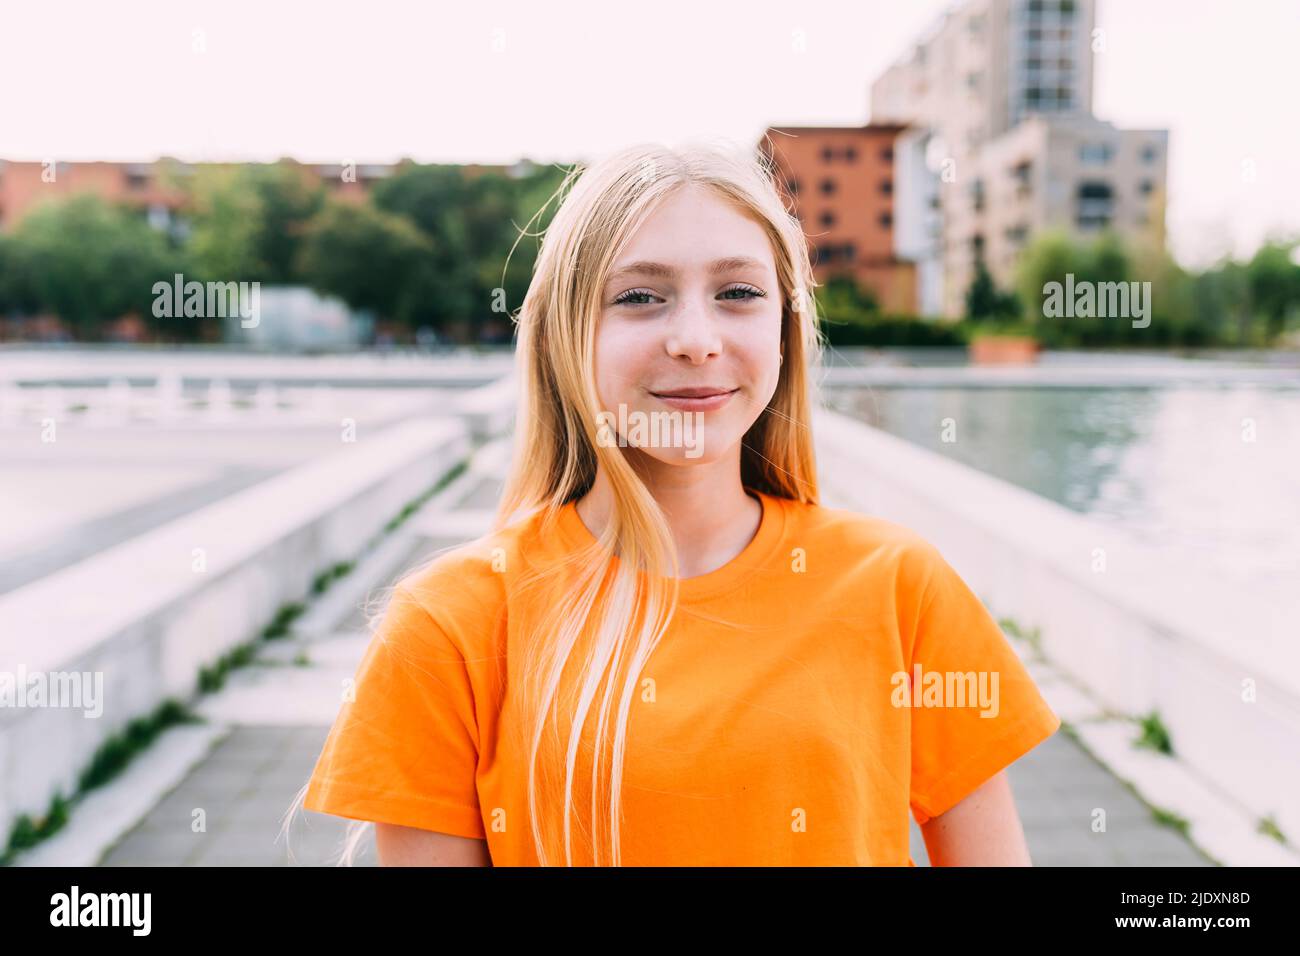 Chica feliz con pelo rubio con camiseta naranja Foto de stock